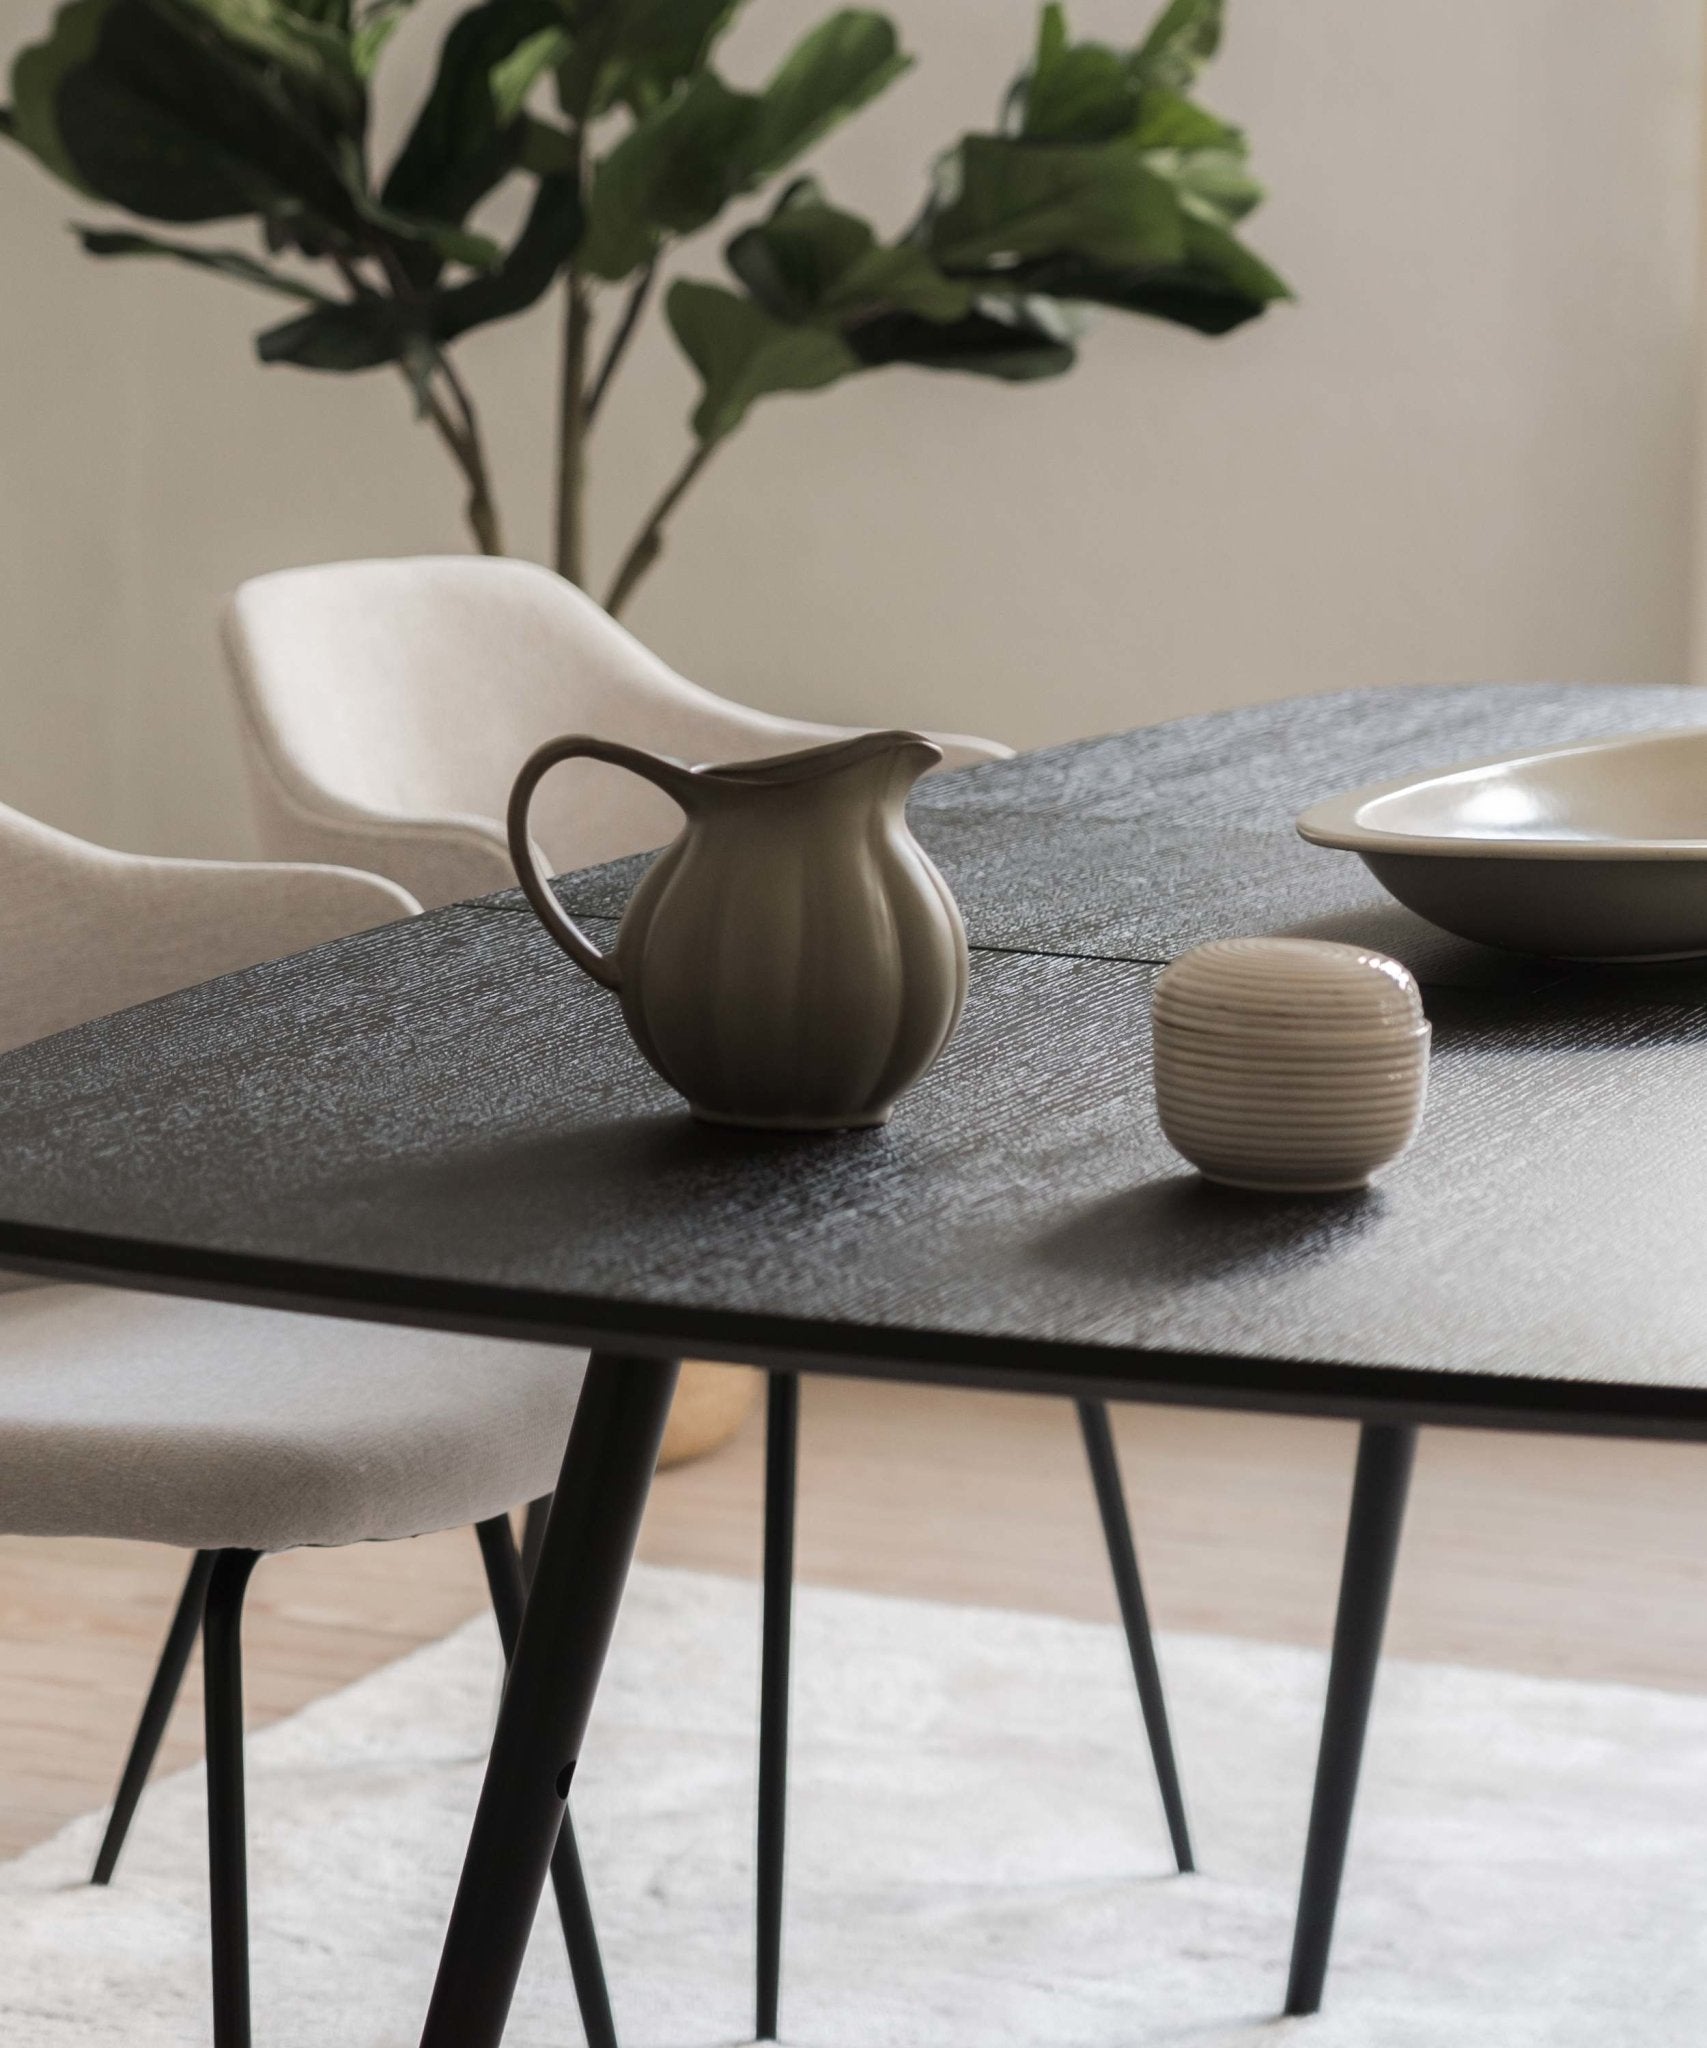 Sort spisebord med udtræk - eg - Dawn - Njordec - træ spisebord - oval spisebord - designer spisebord - spisebord i eg